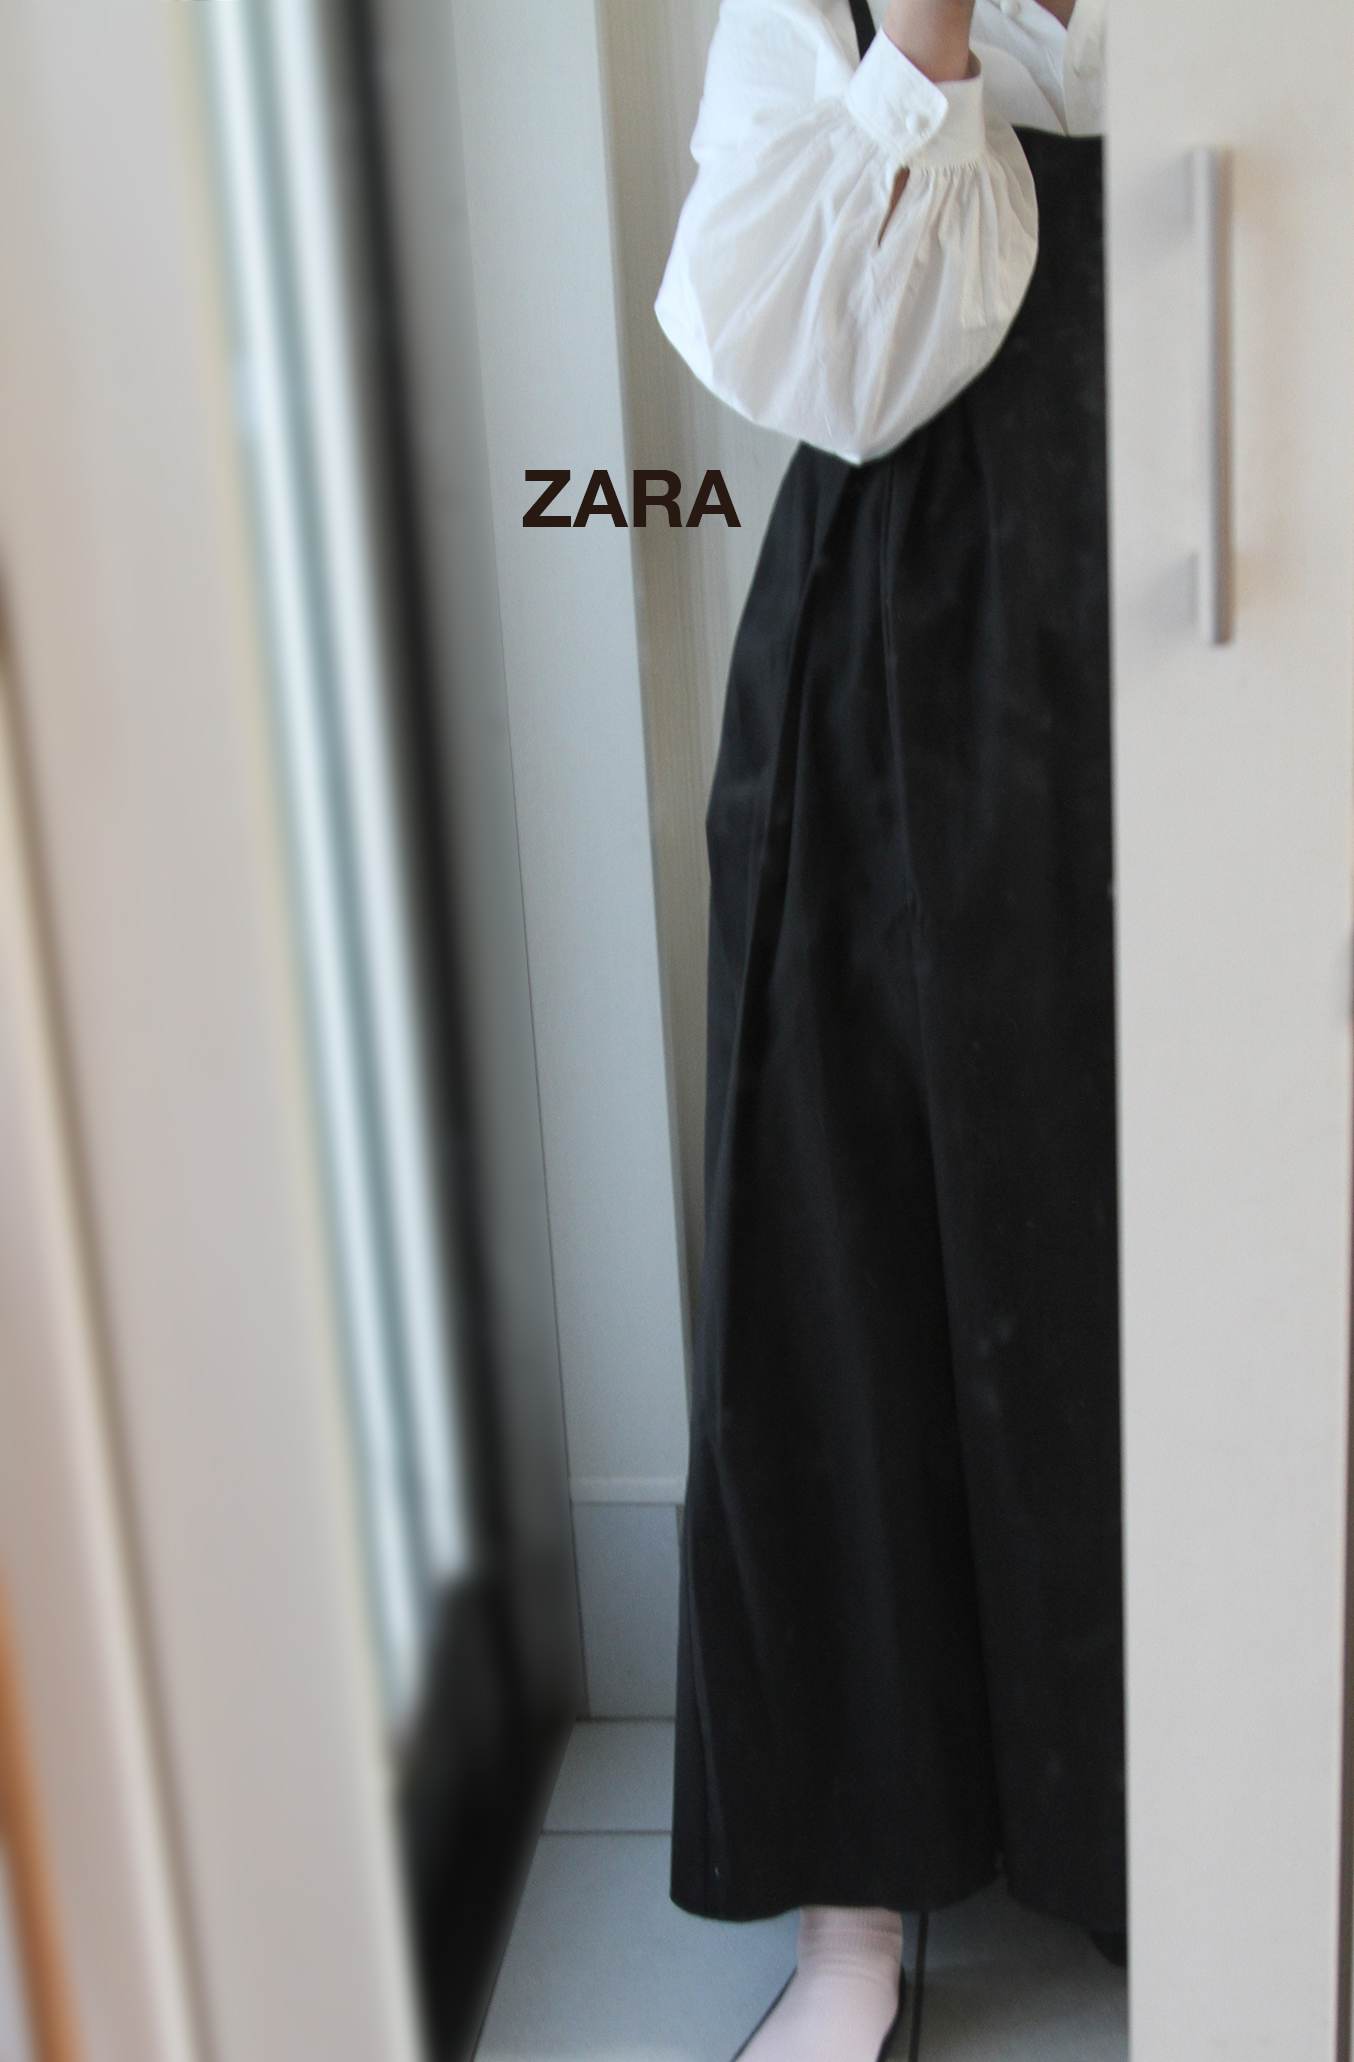 ZARAのボリュームワンピース、この形を探してた。この春夏服、一番のり ...